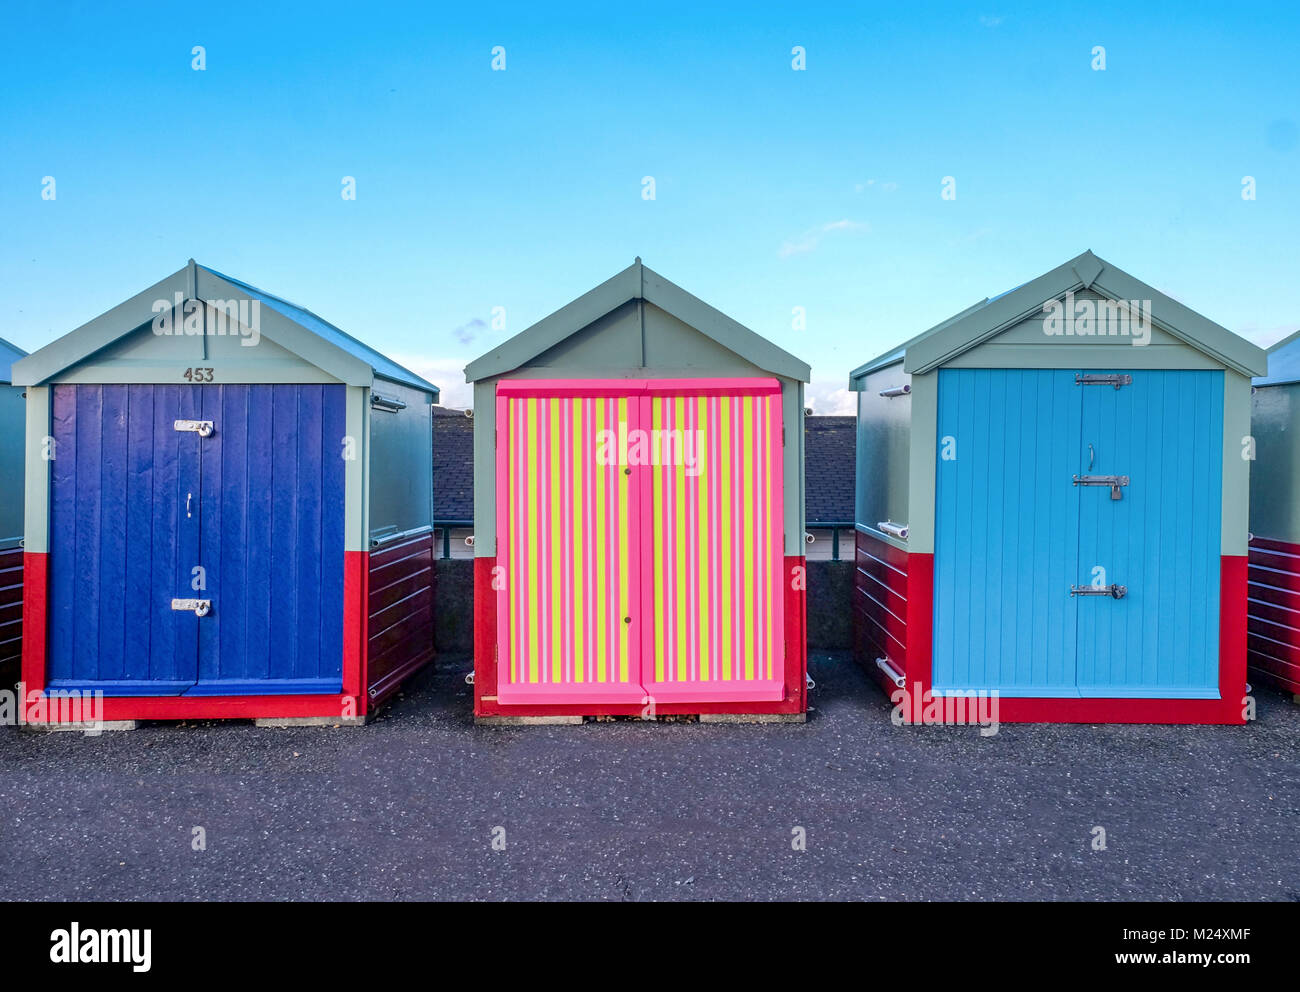 Brighton Seafront drei Kabinen, zwei mit blauen Türen und der in der Mitte hat einen bunten Tür von Gelb, Pink, Schwarz Streifen hinter ist b Stockfoto